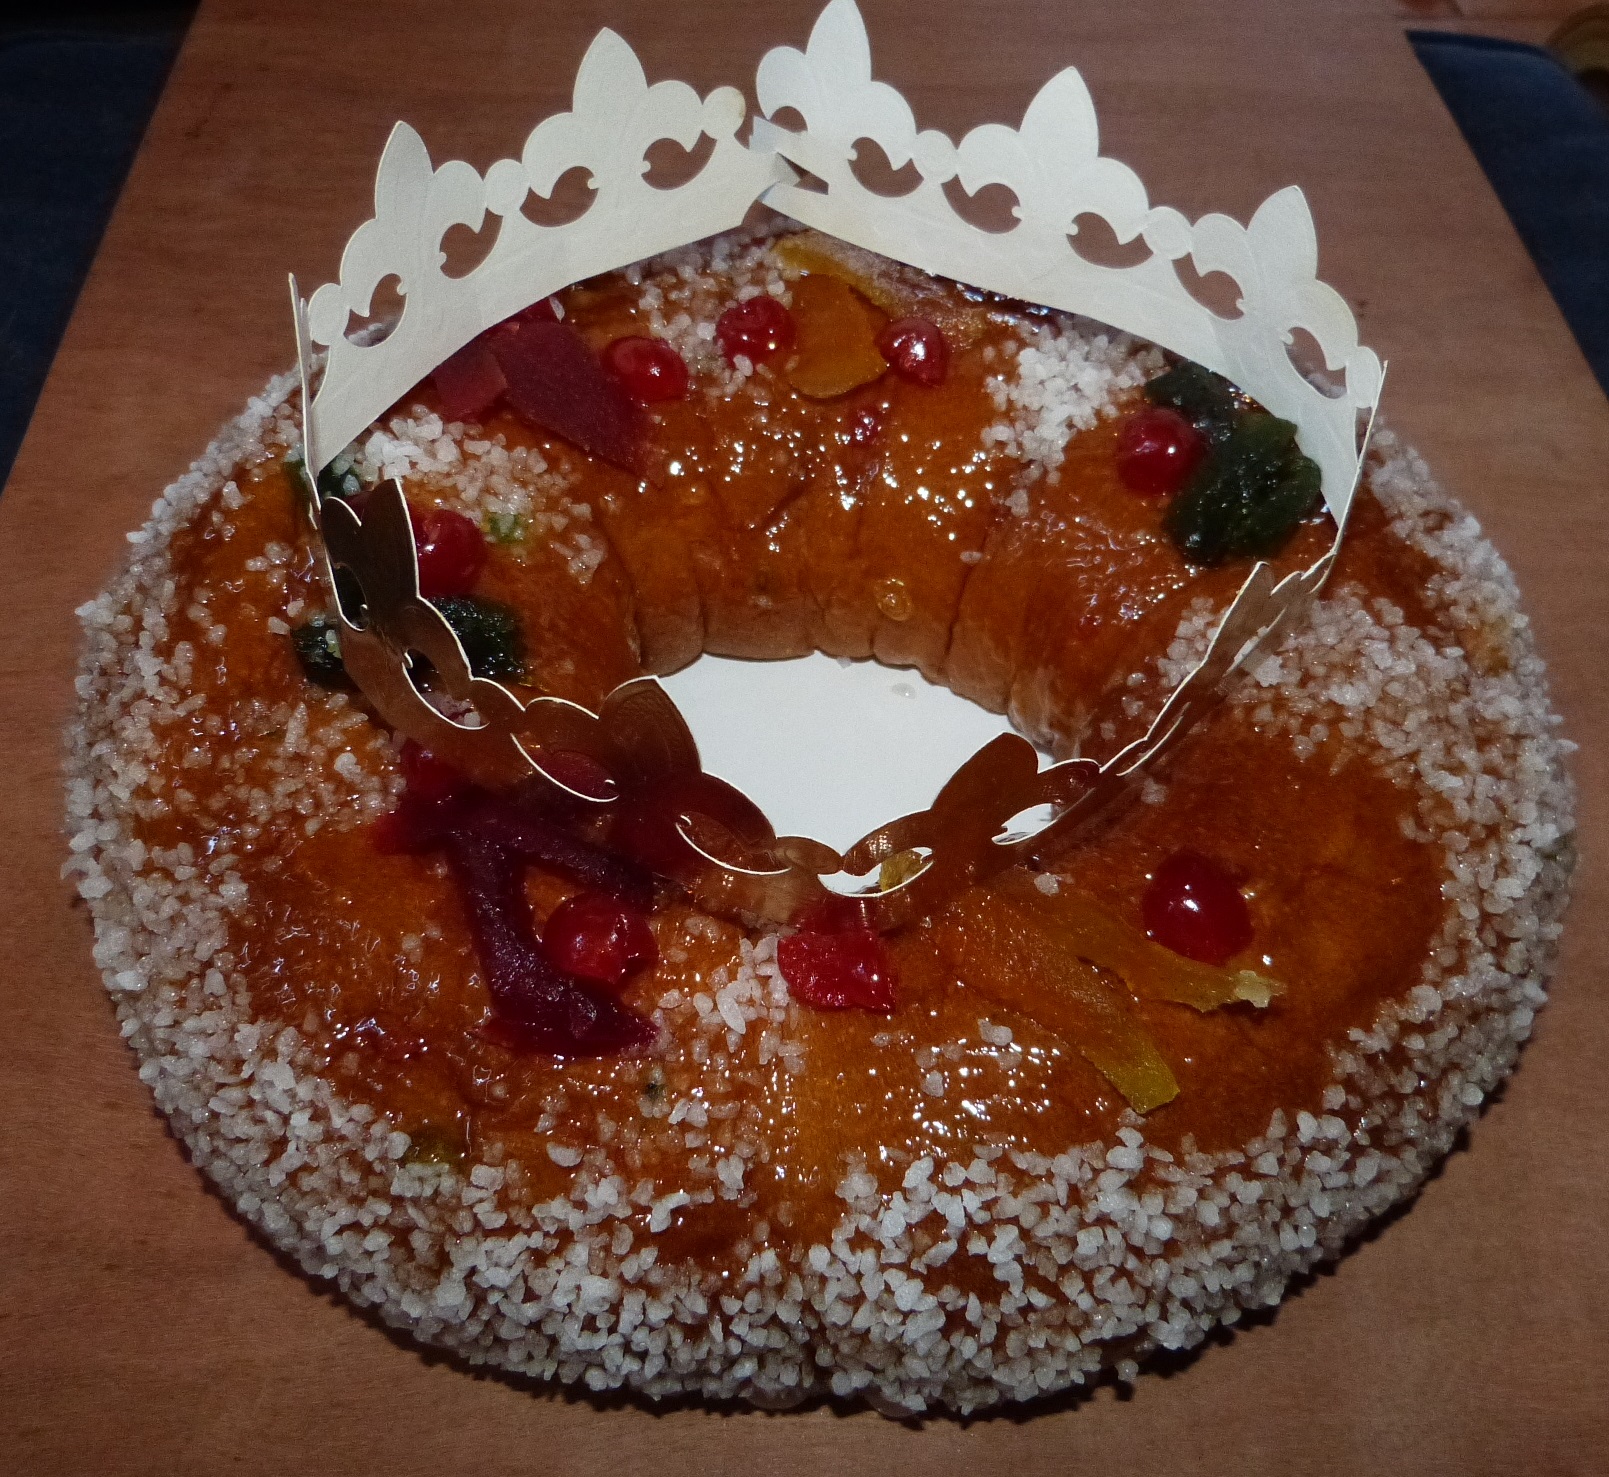 Le gâteau des Rois : une vraie tradition provençale